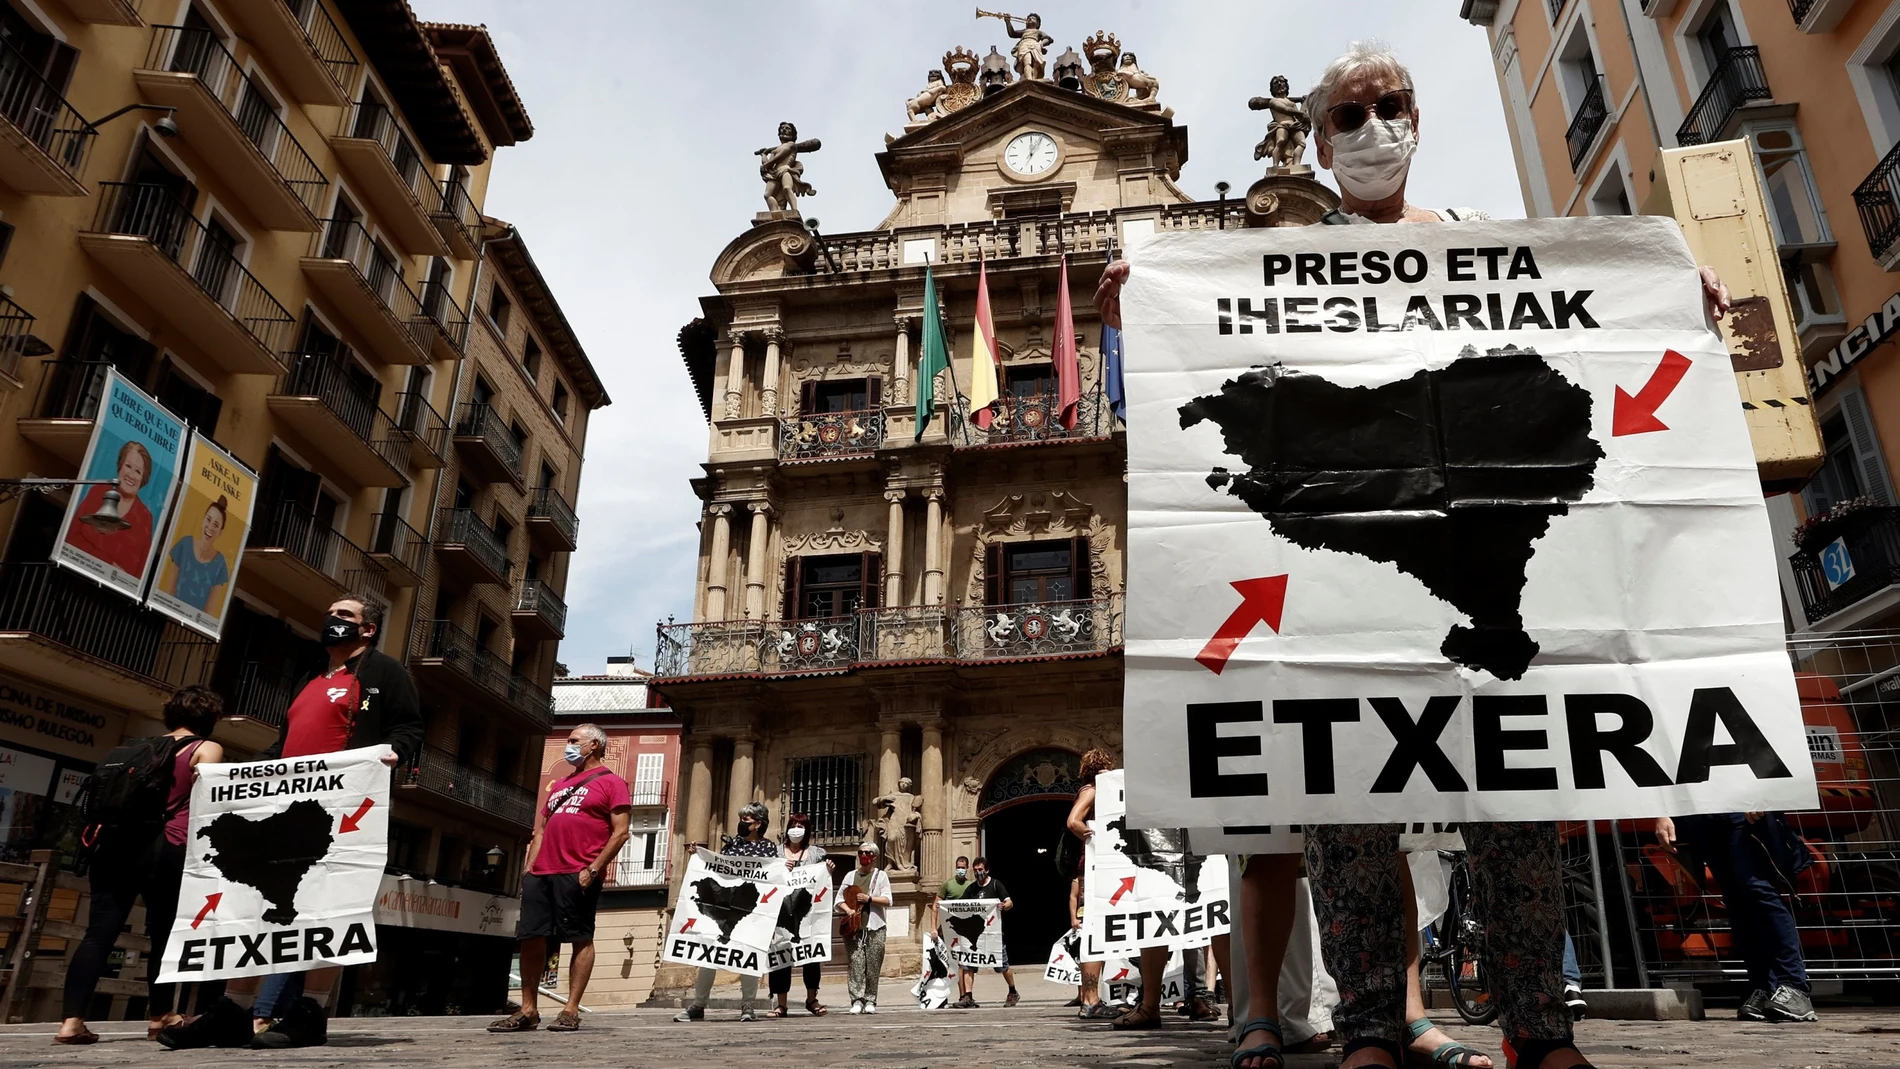 Manifestación bajo el lema "Euskal presoak etxean eta bizirik nahi ditugu" (Queremos a los presos vascos en casa y vivos